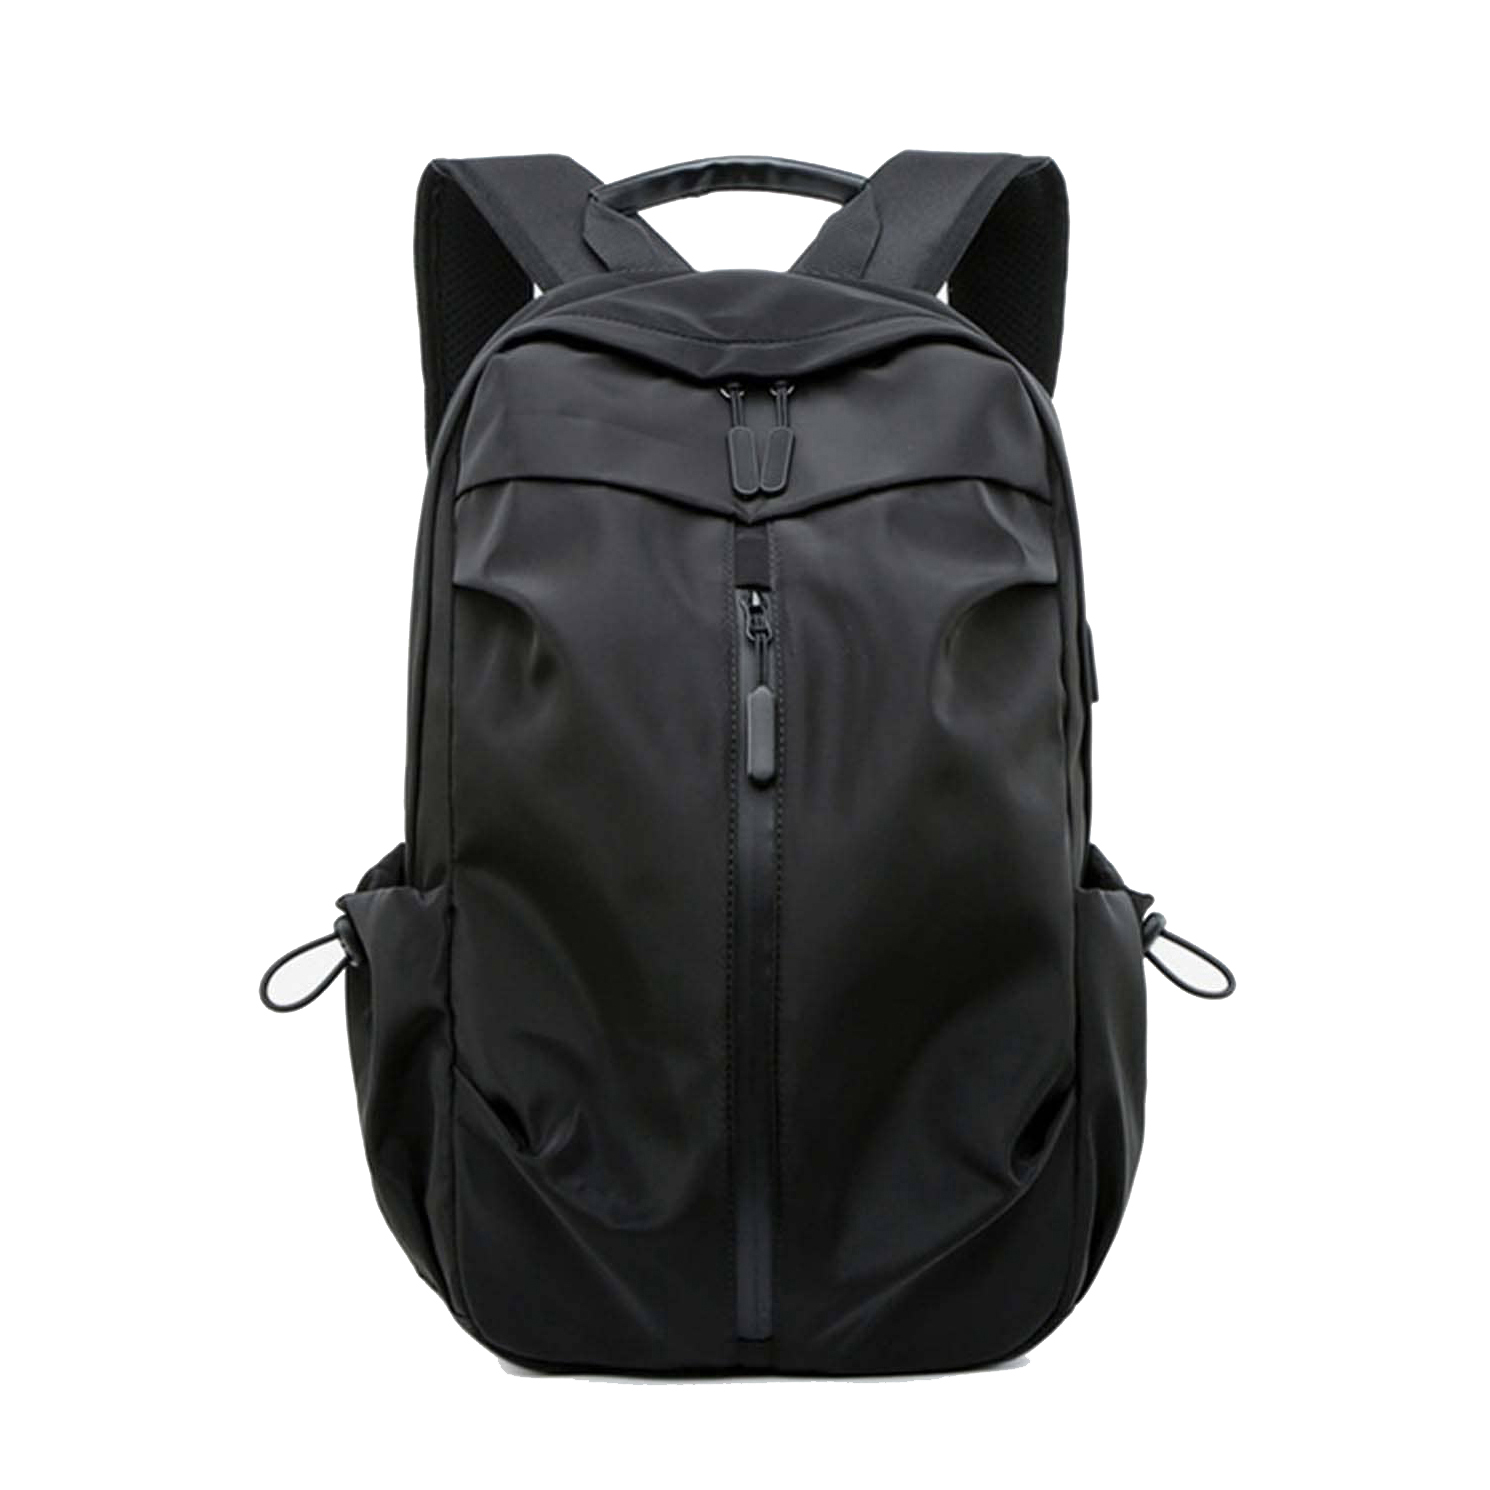 AdventureSync Twin Backpack